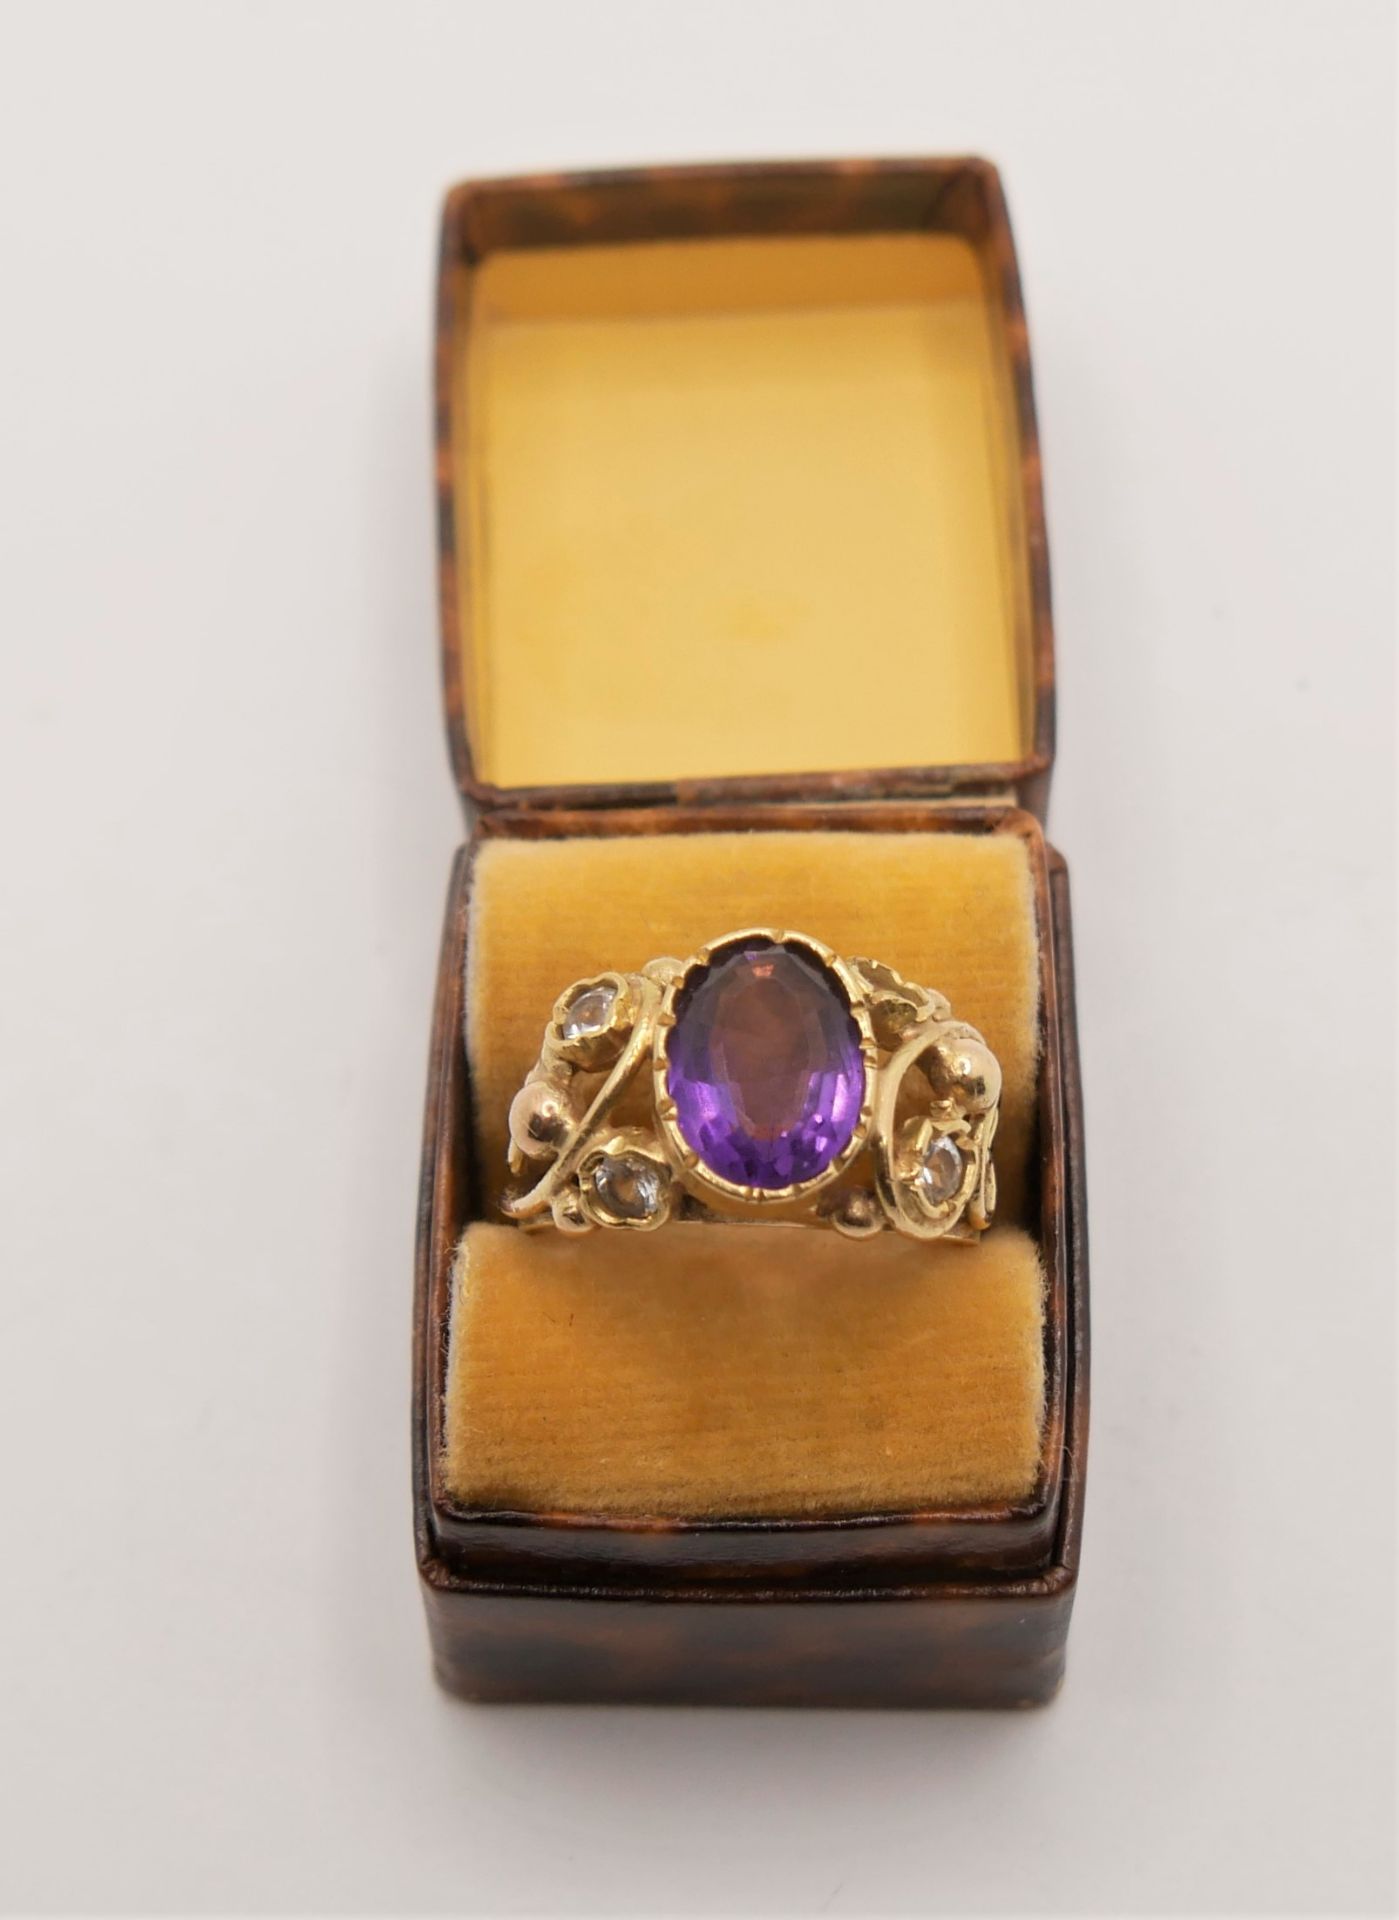 älterer Silber vergoldeter Ring mit Amethyst, Zirkonia. Ringgröße 55